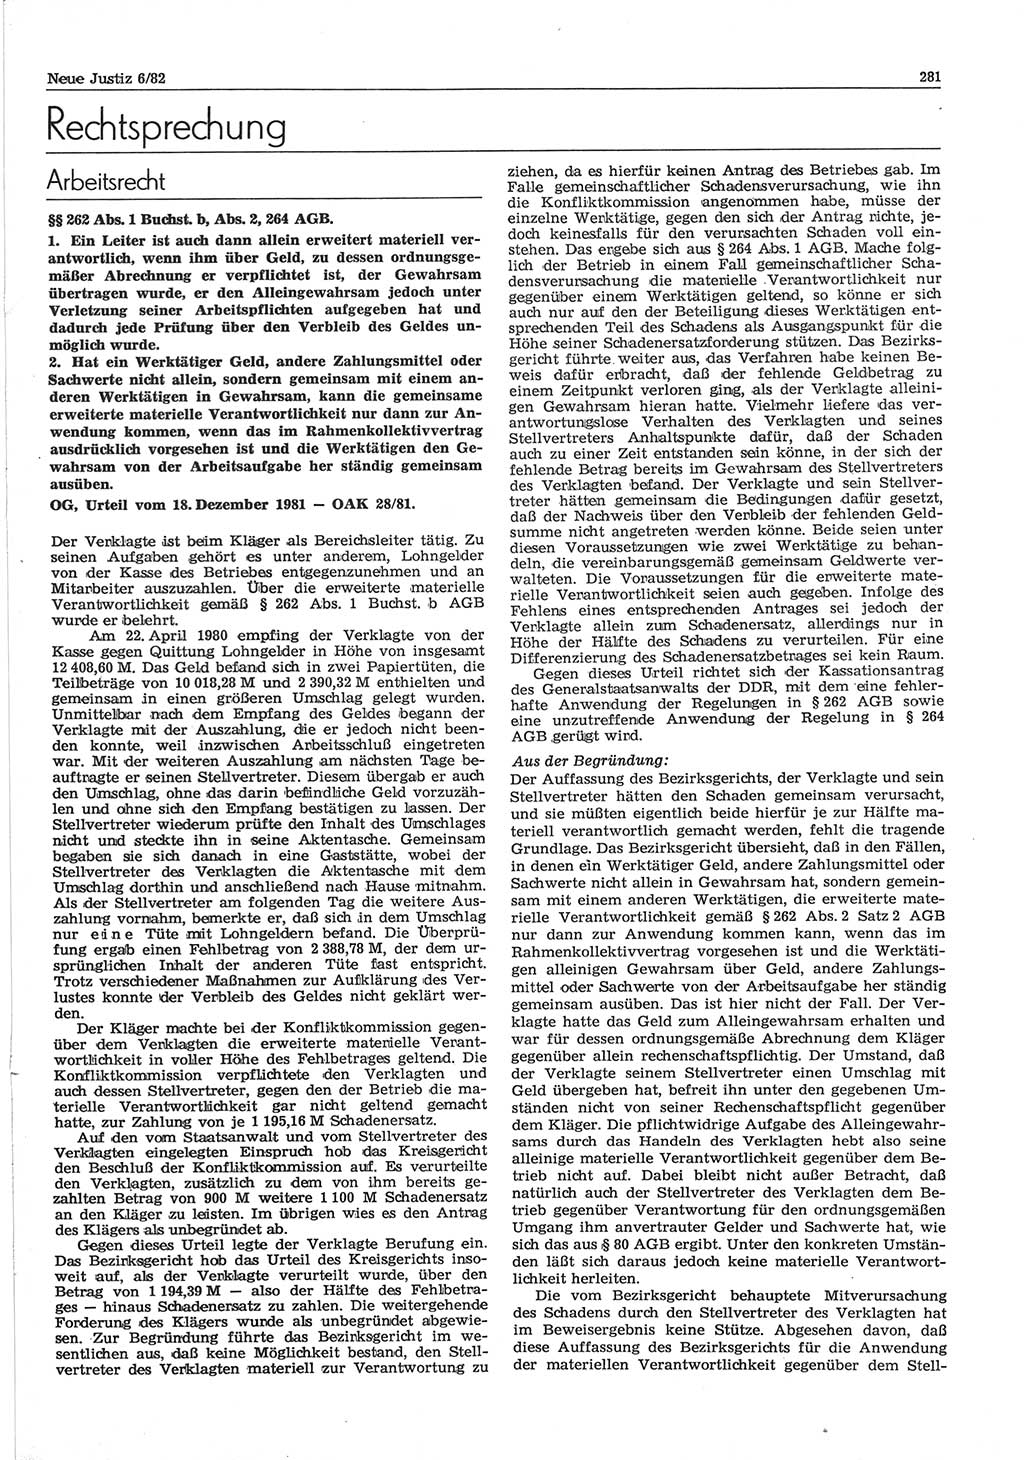 Neue Justiz (NJ), Zeitschrift für sozialistisches Recht und Gesetzlichkeit [Deutsche Demokratische Republik (DDR)], 36. Jahrgang 1982, Seite 281 (NJ DDR 1982, S. 281)